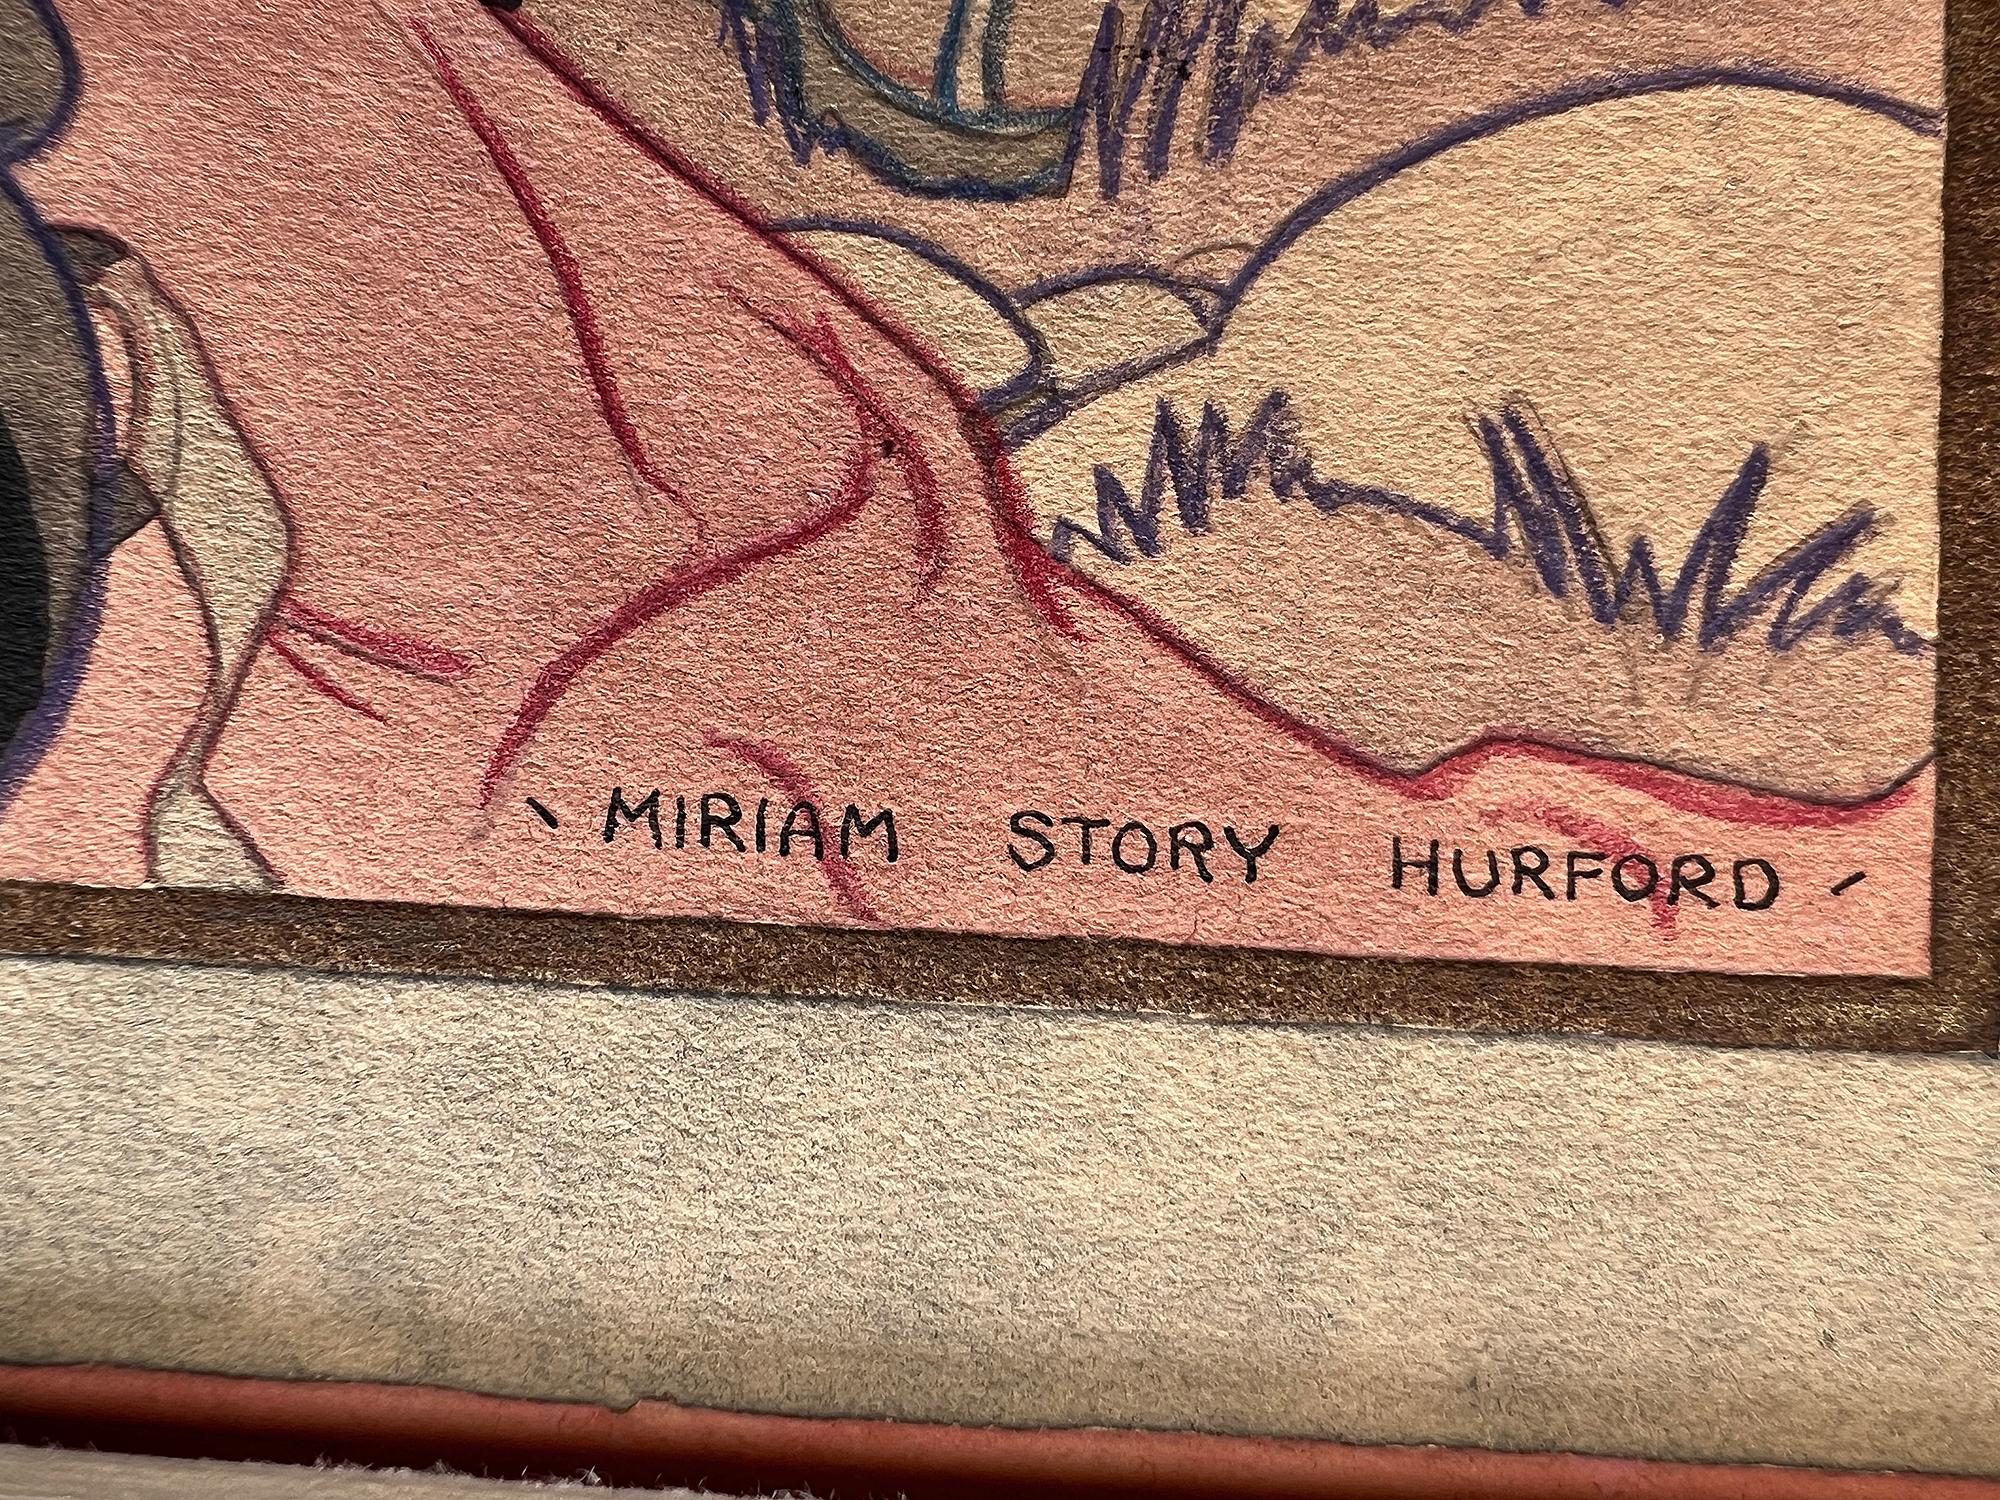 Miriam Story Hurford  war in den 1930er bis 1950er Jahren eine produktive und bedeutende amerikanische Illustratorin.  Sie gestaltete Titelbilder für Frauenzeitschriften, Wohnzeitschriften und religiöse Magazine.  Diese Arbeit zeigt die t  die